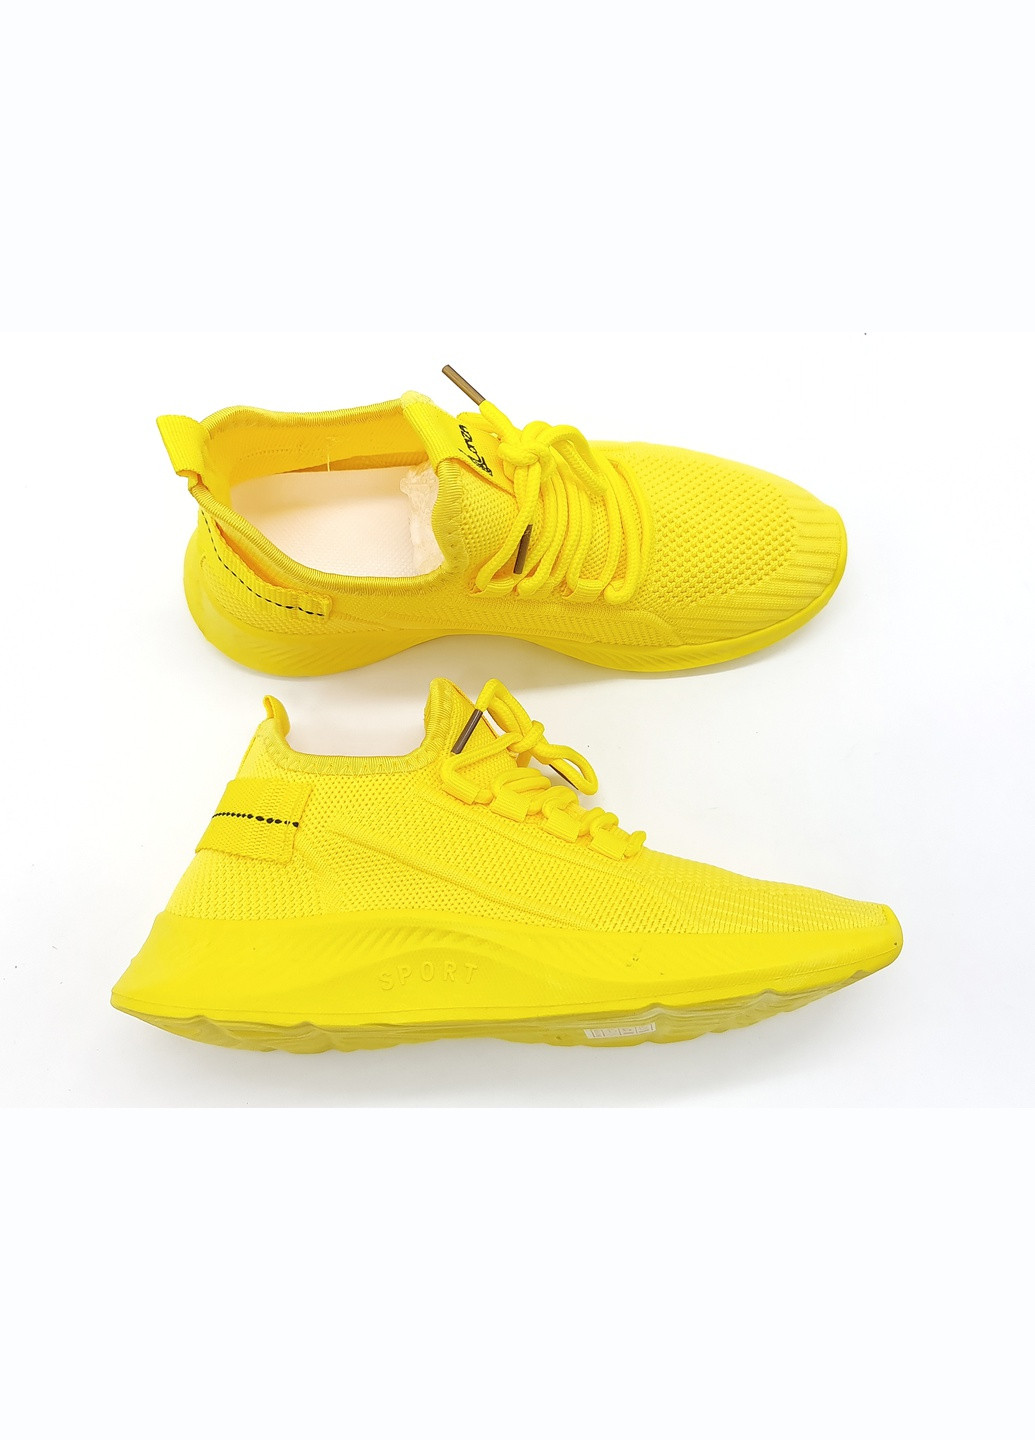 Жовті всесезонні жіночі кросівки жовті текстиль l-16-38 24,5 см (р) Lonza